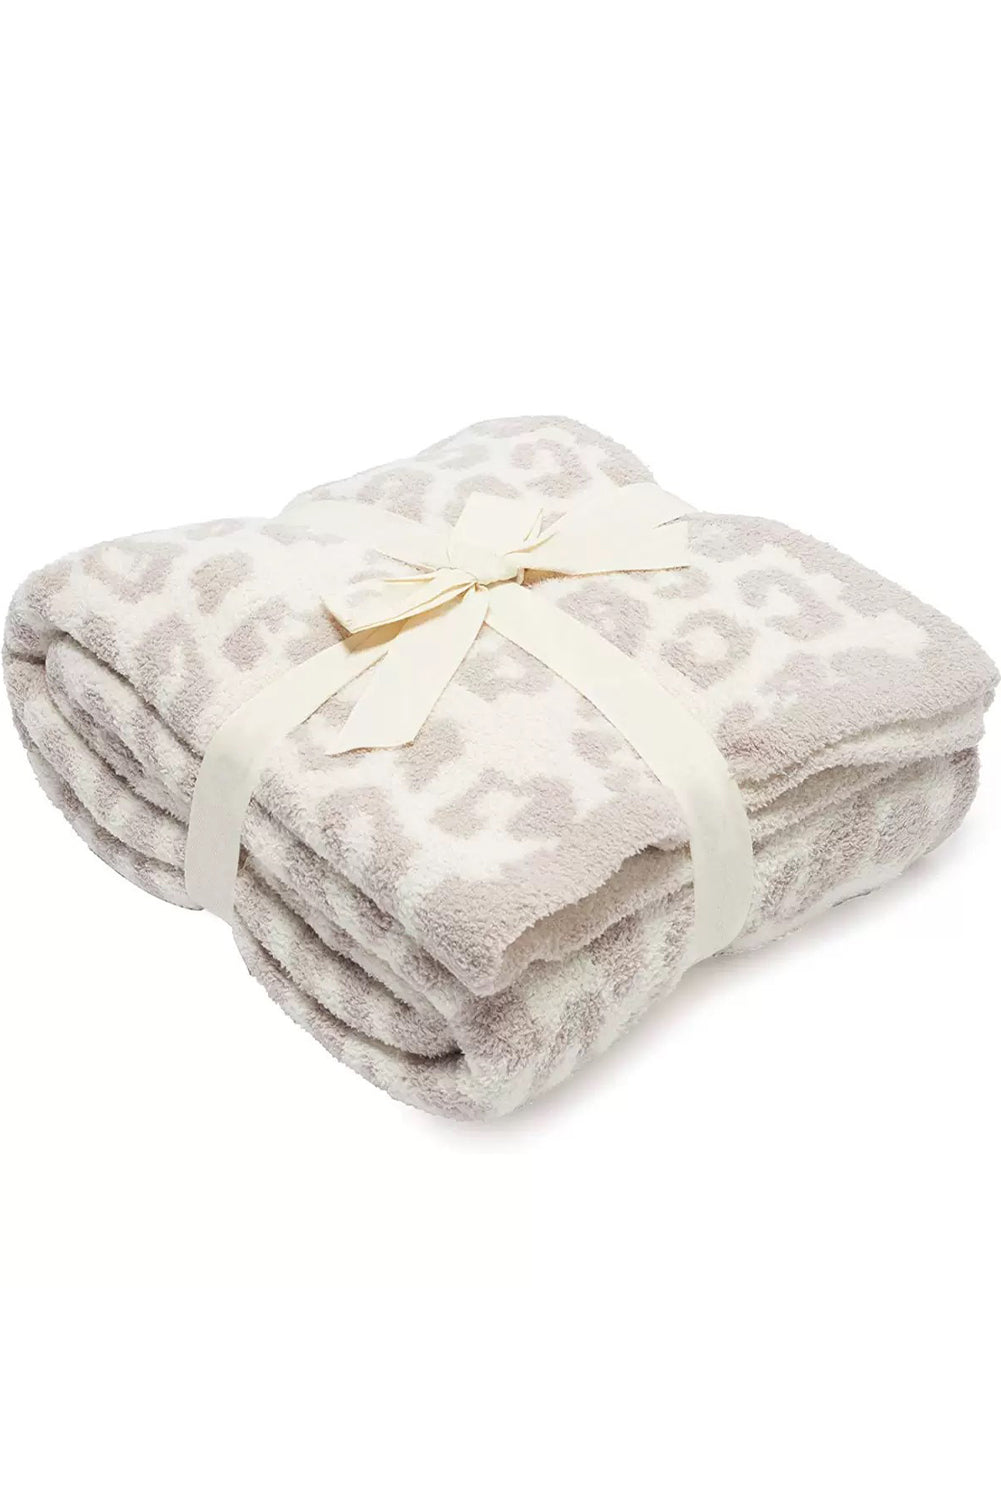 Leopard Grain Knitting Blanket